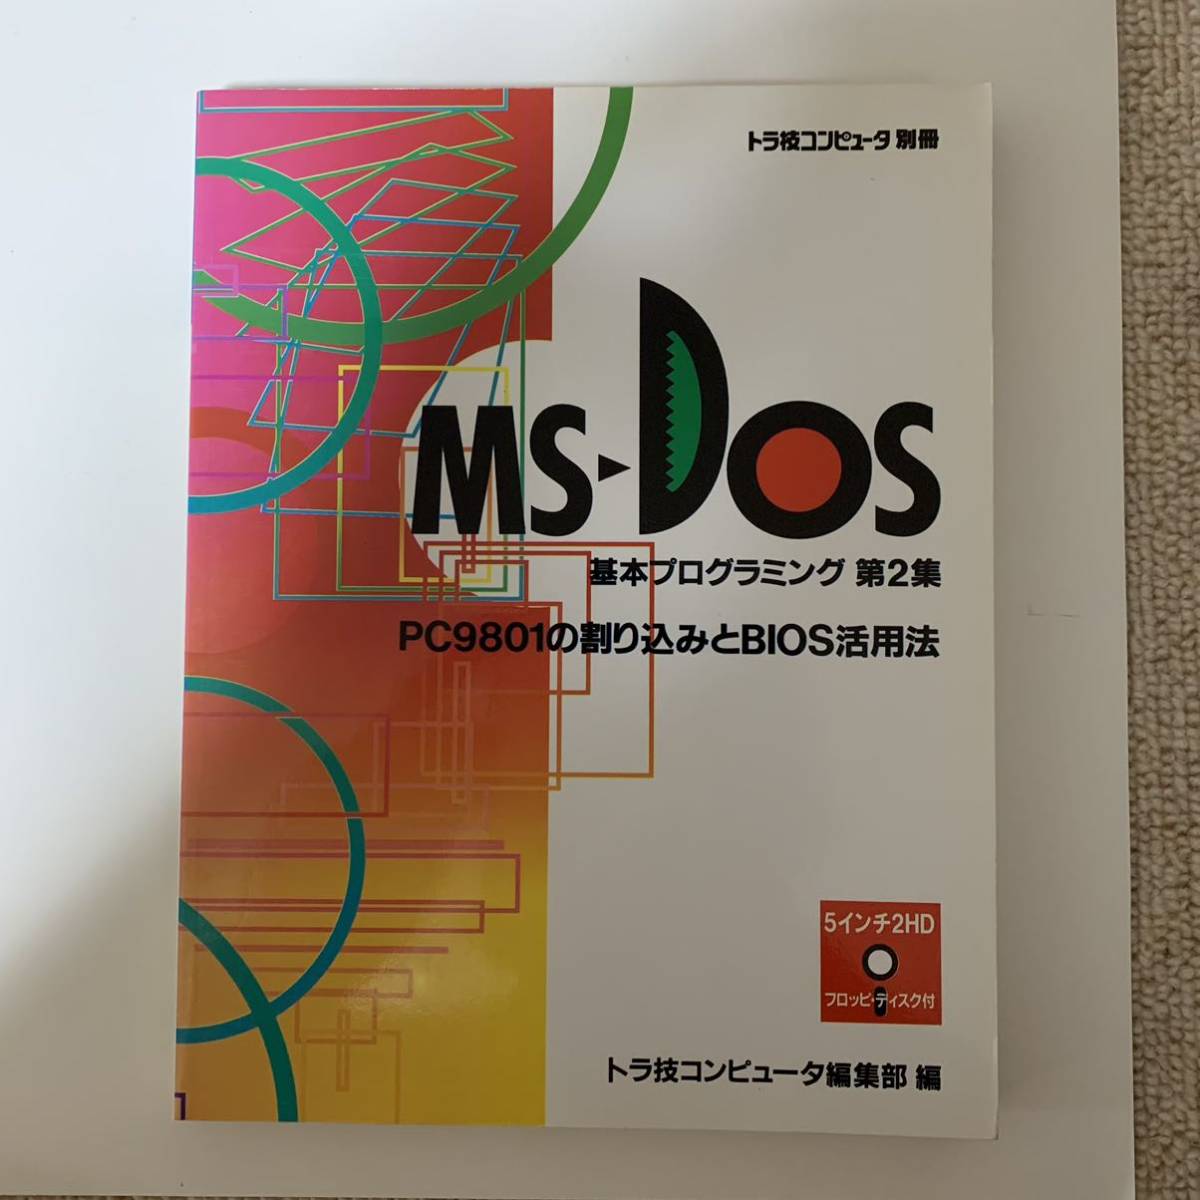 【海外輸入】 MS-DOS 基本プログラミング PC9801の割り込みとBIOS活用法 トラ技コンピュータ別冊 CQ出版社 フロッピー欠 パソコン一般